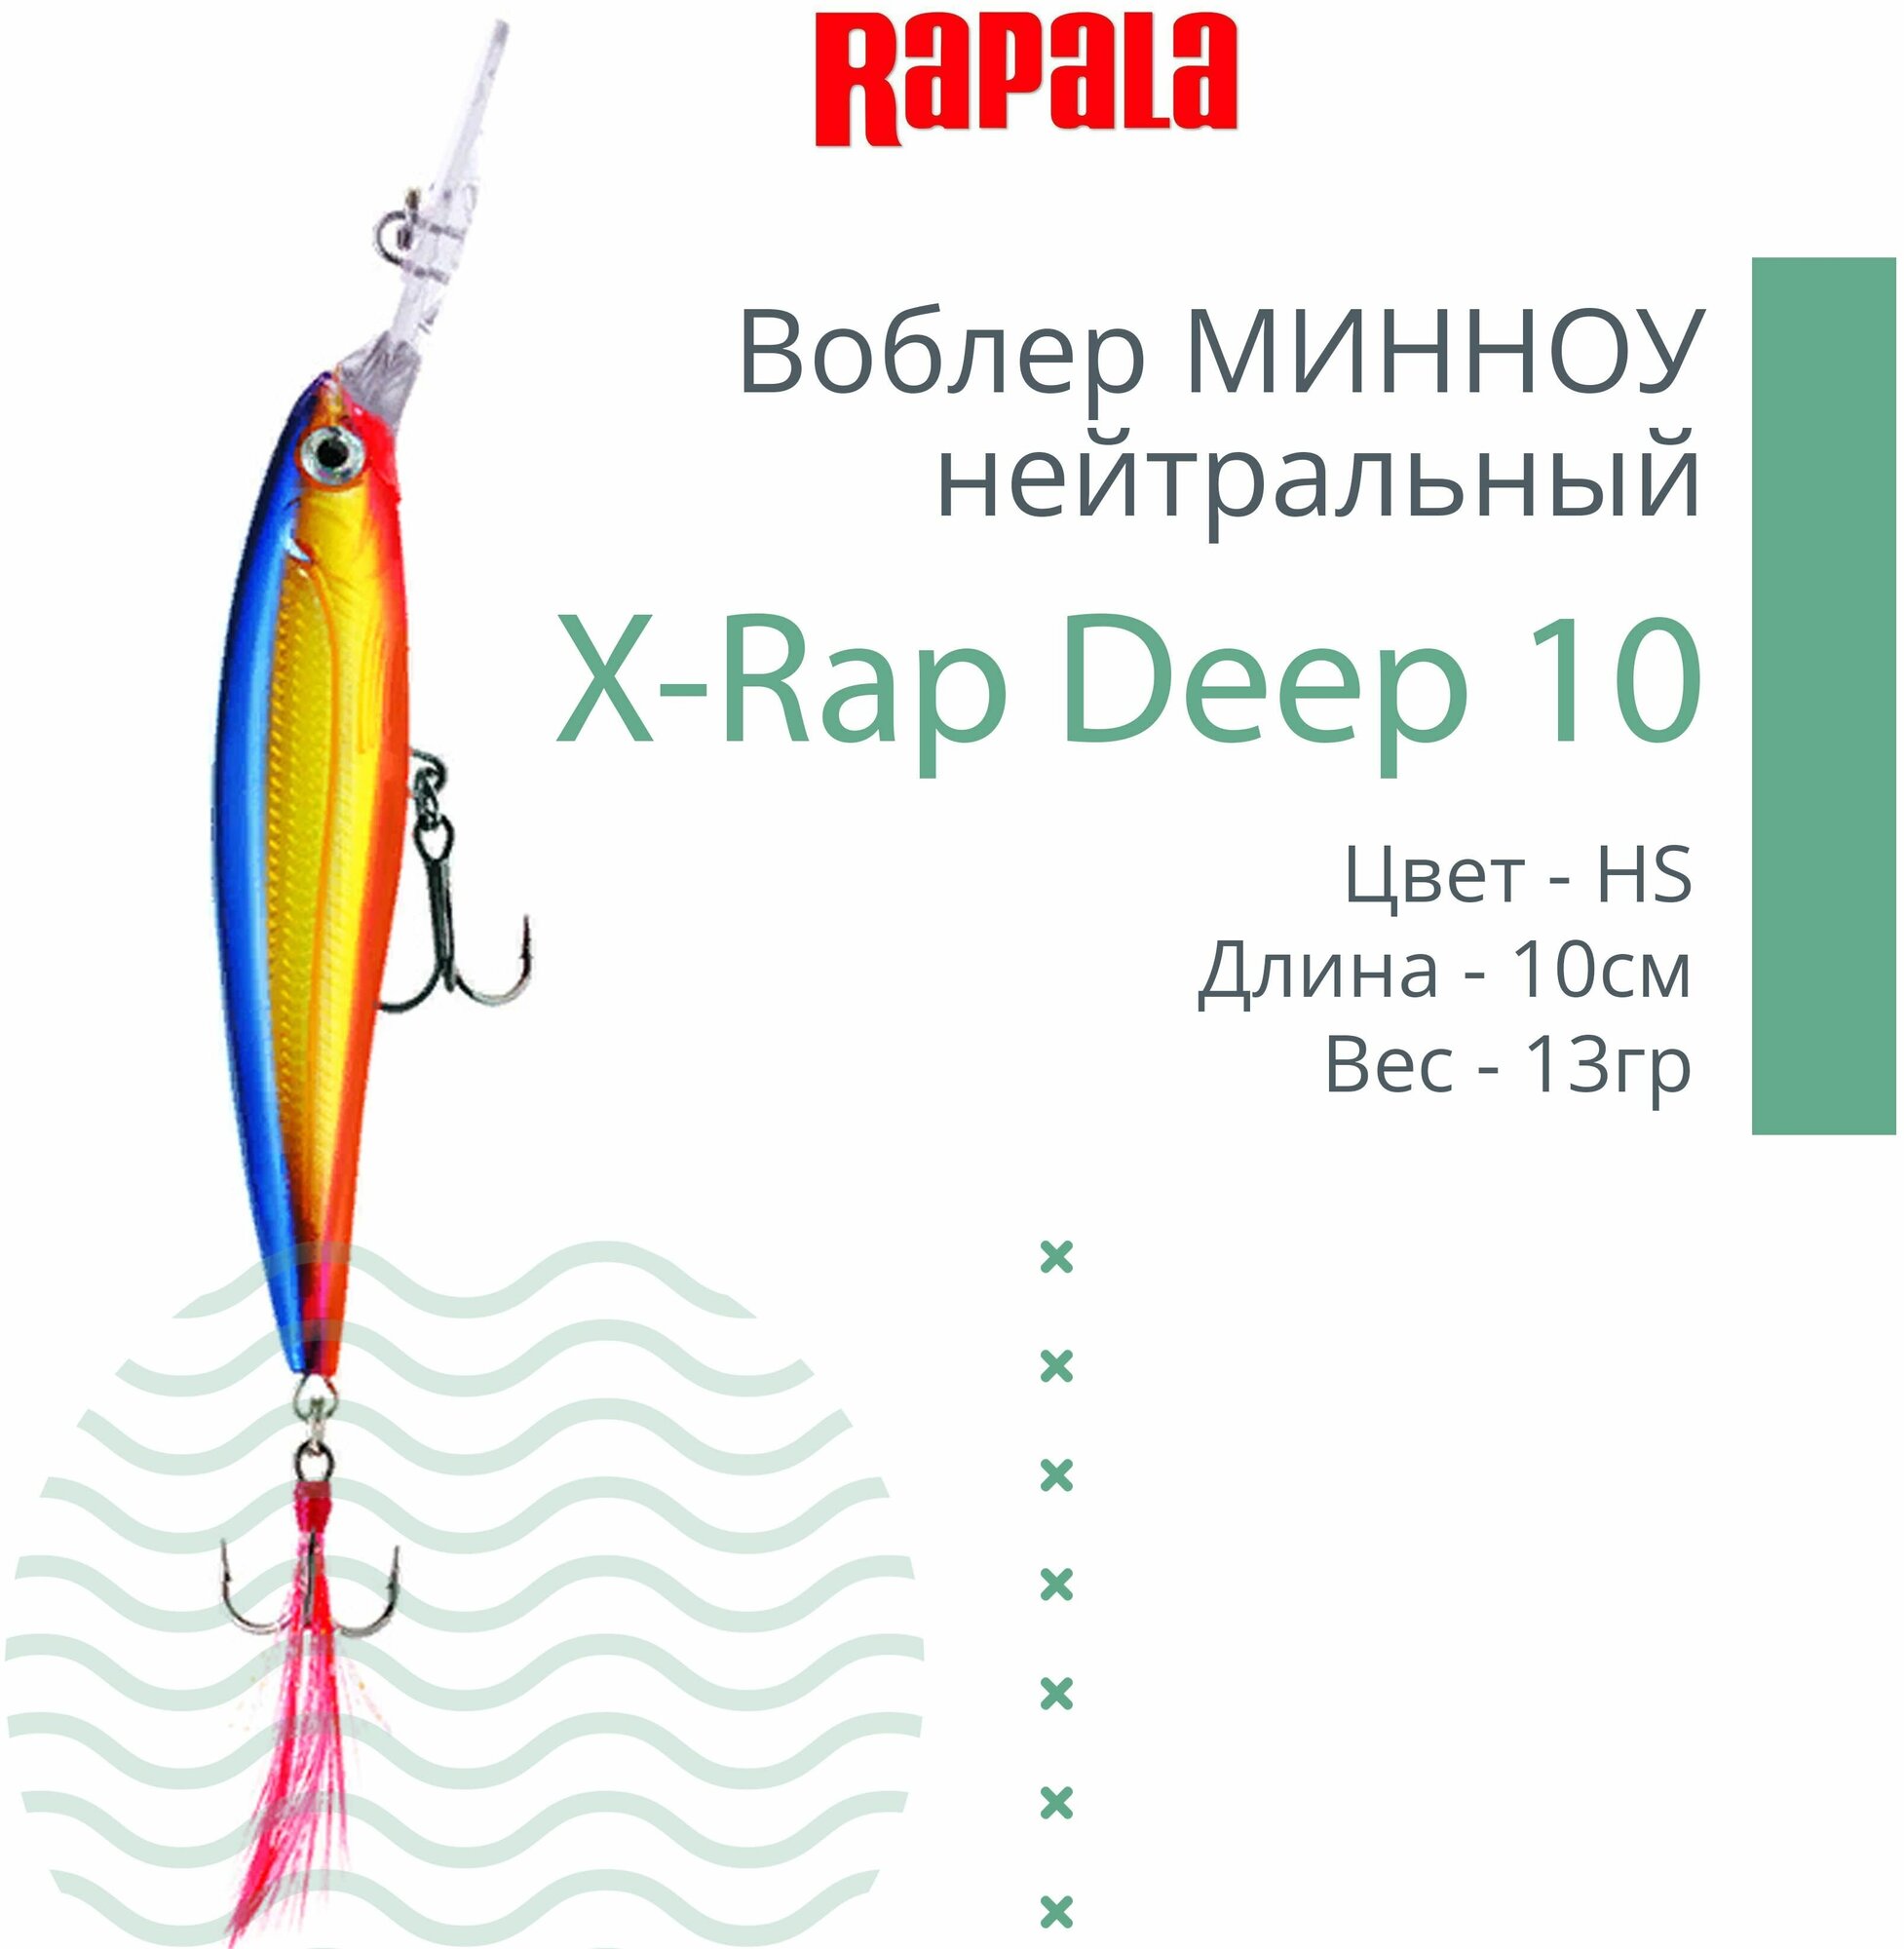 Воблер для рыбалки RAPALA X-Rap Deep 10, 10см, 13гр, цвет HS, нейтральный